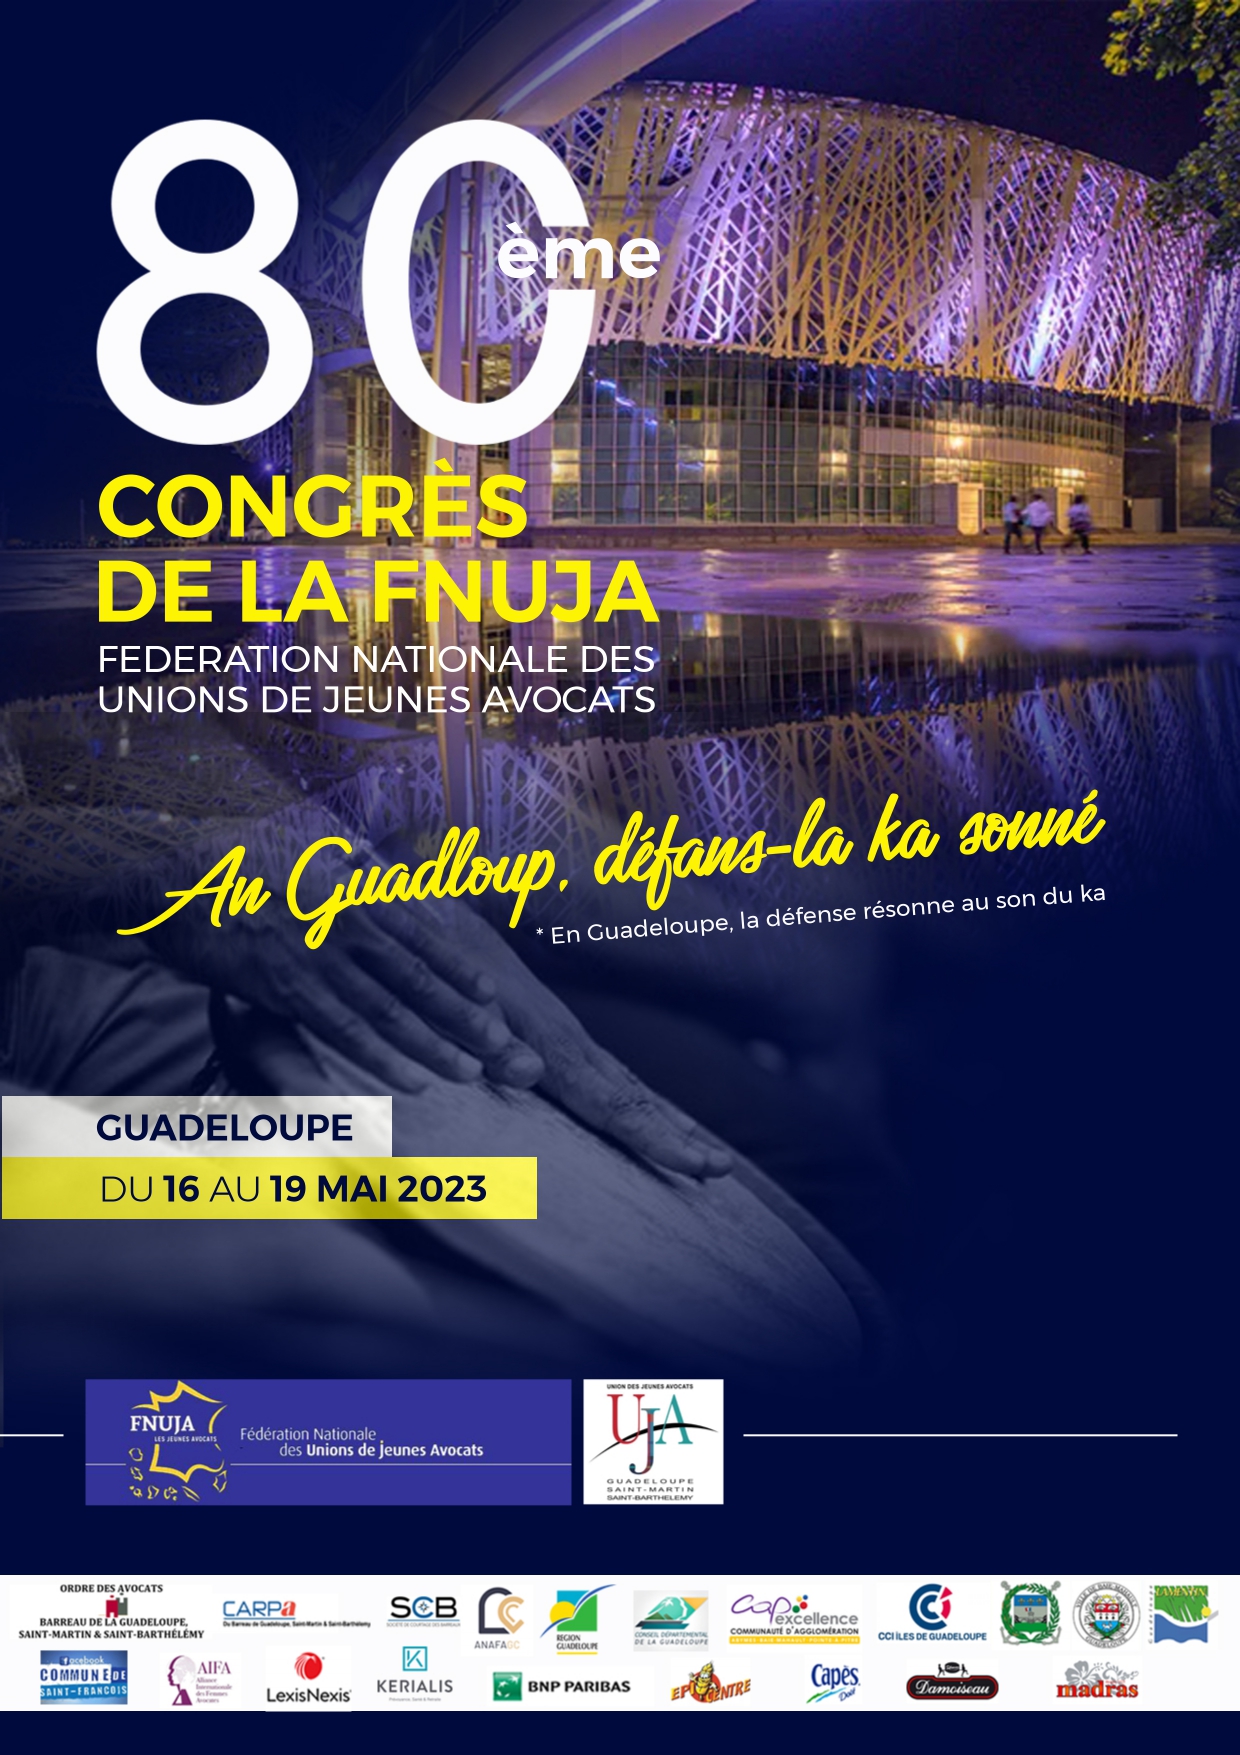 80ème congrès de la FNUJA - GUADELOUPE - An Gwadloup, Défans-la KA sonné !